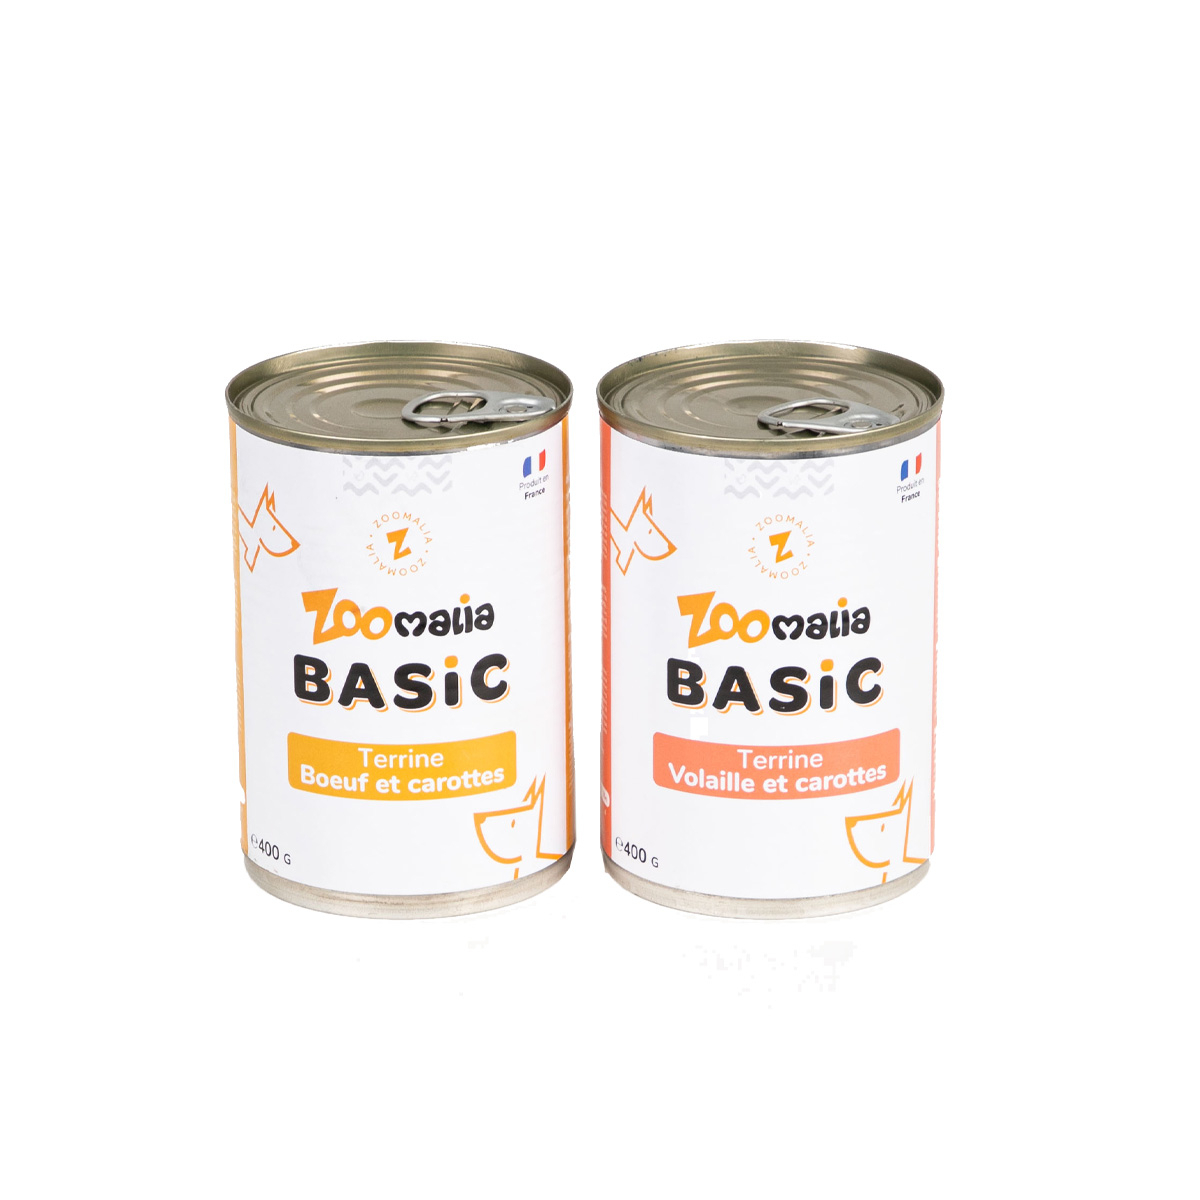 Terrine senza cereali Zoomalia Basic per cani - 2 ricette a scelta